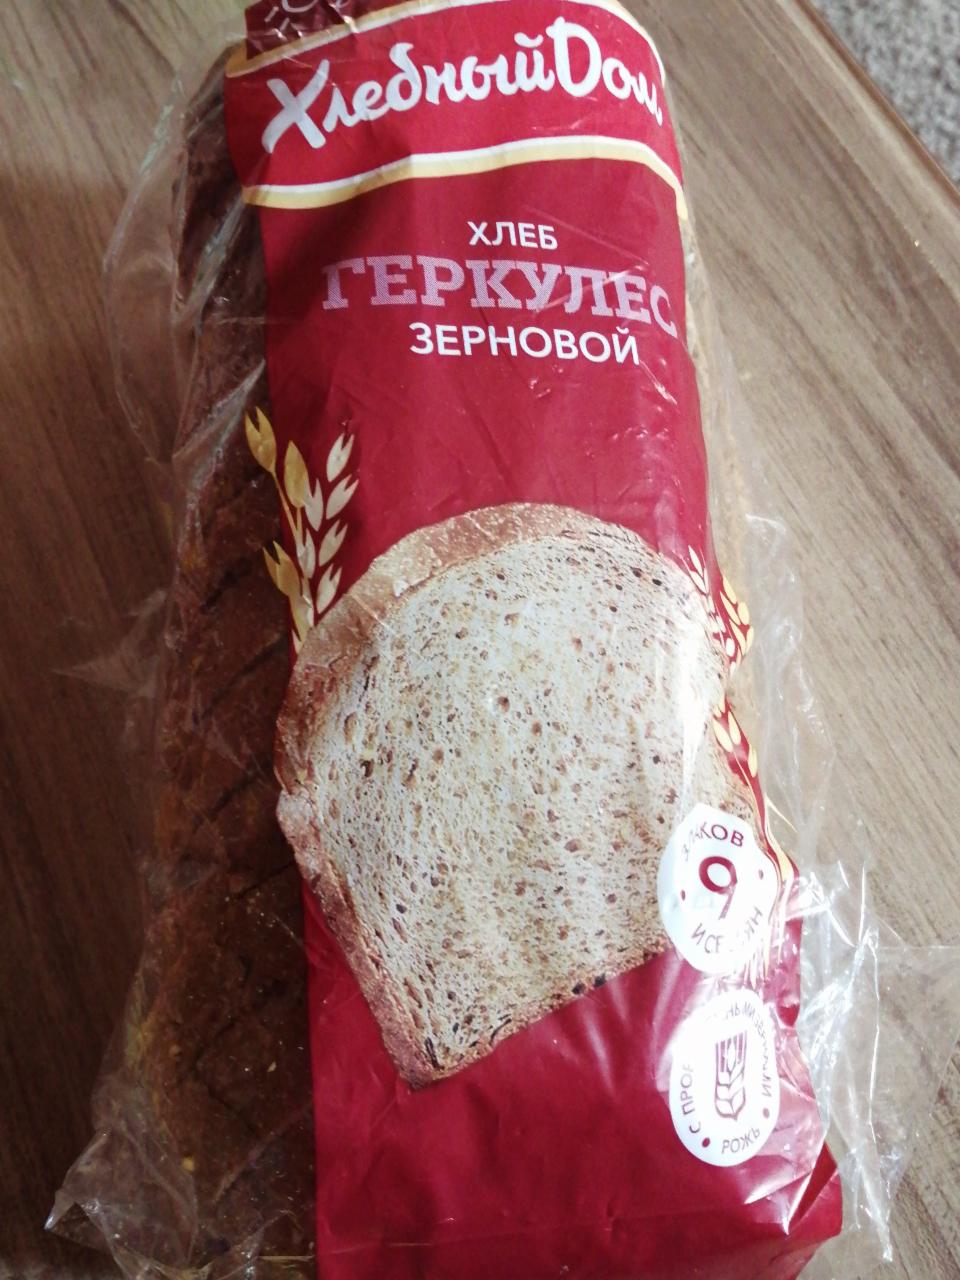 Фото - Зерновой хлеб геркулес Хлебный дом